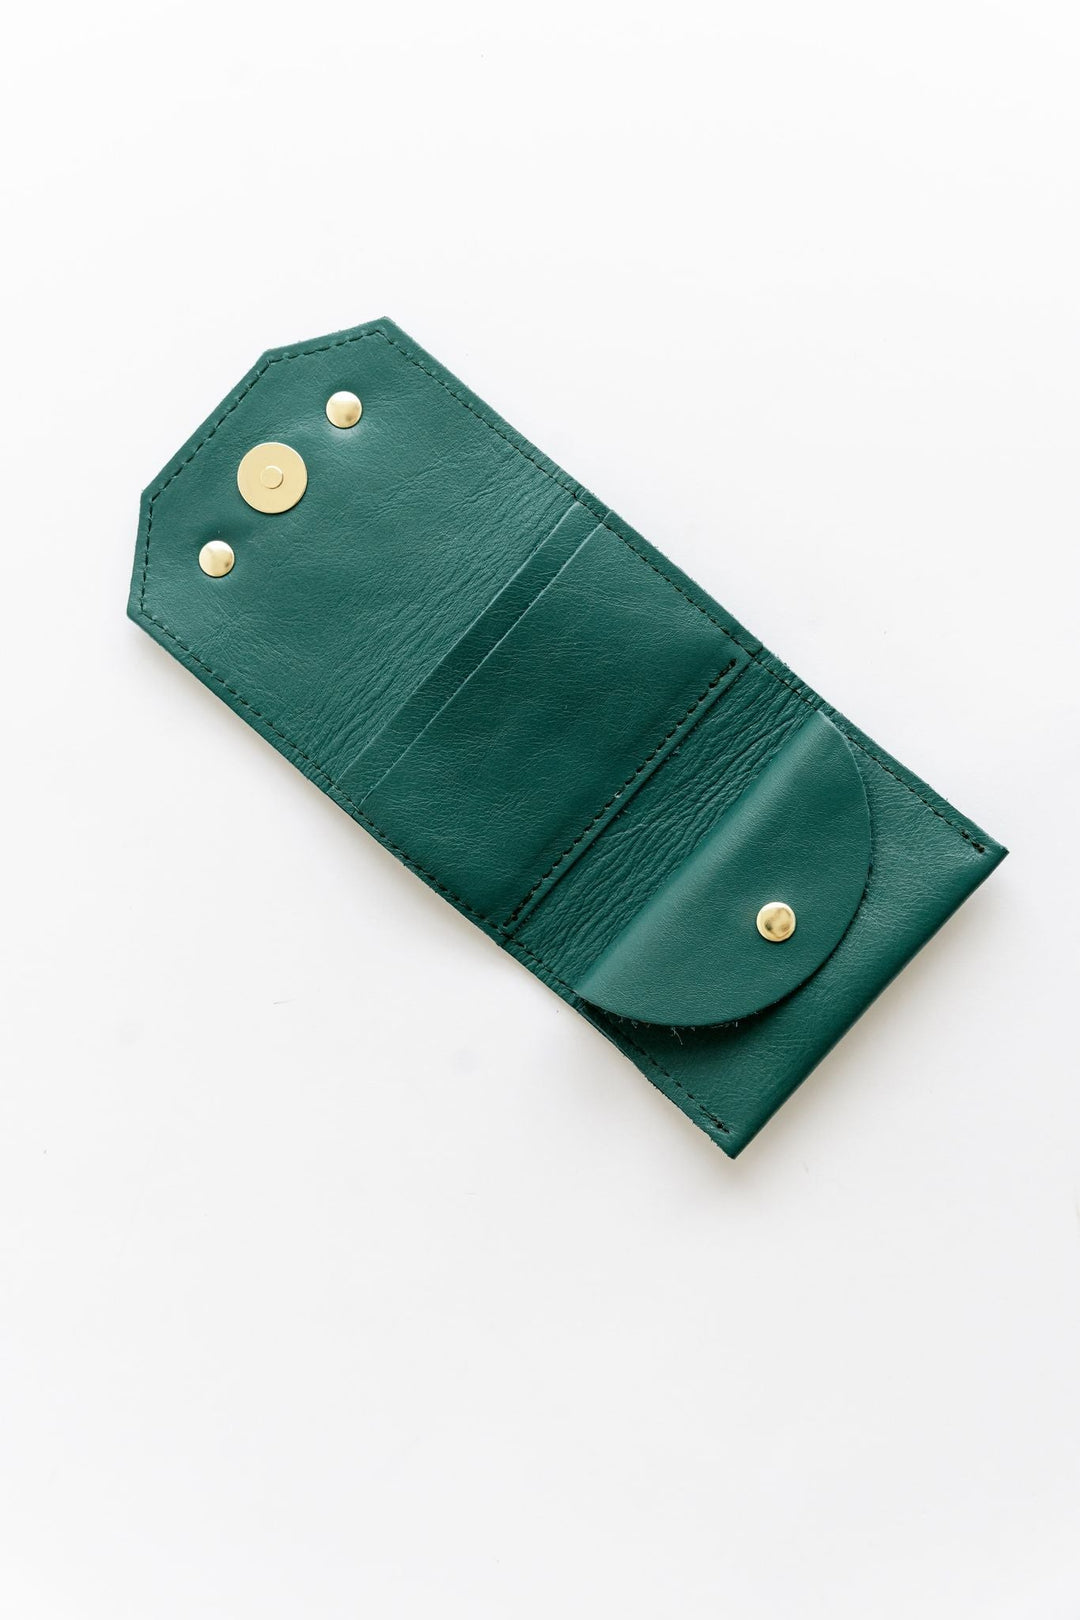 1973 Mini Wallet | Jade Leather